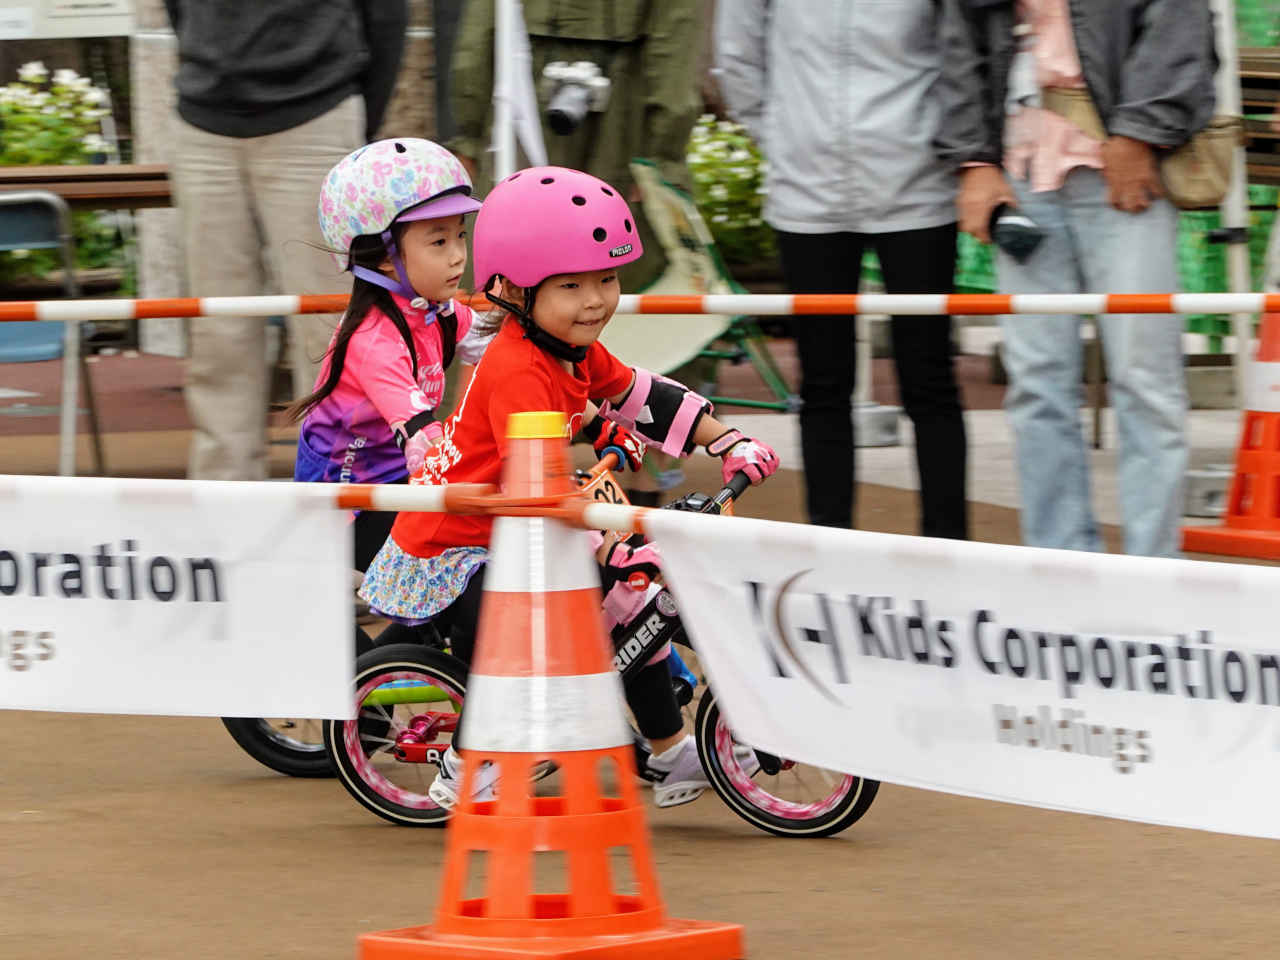 ストライダー大会のジャパンカップキックバイク大会 本予選で快走する5歳の女の子